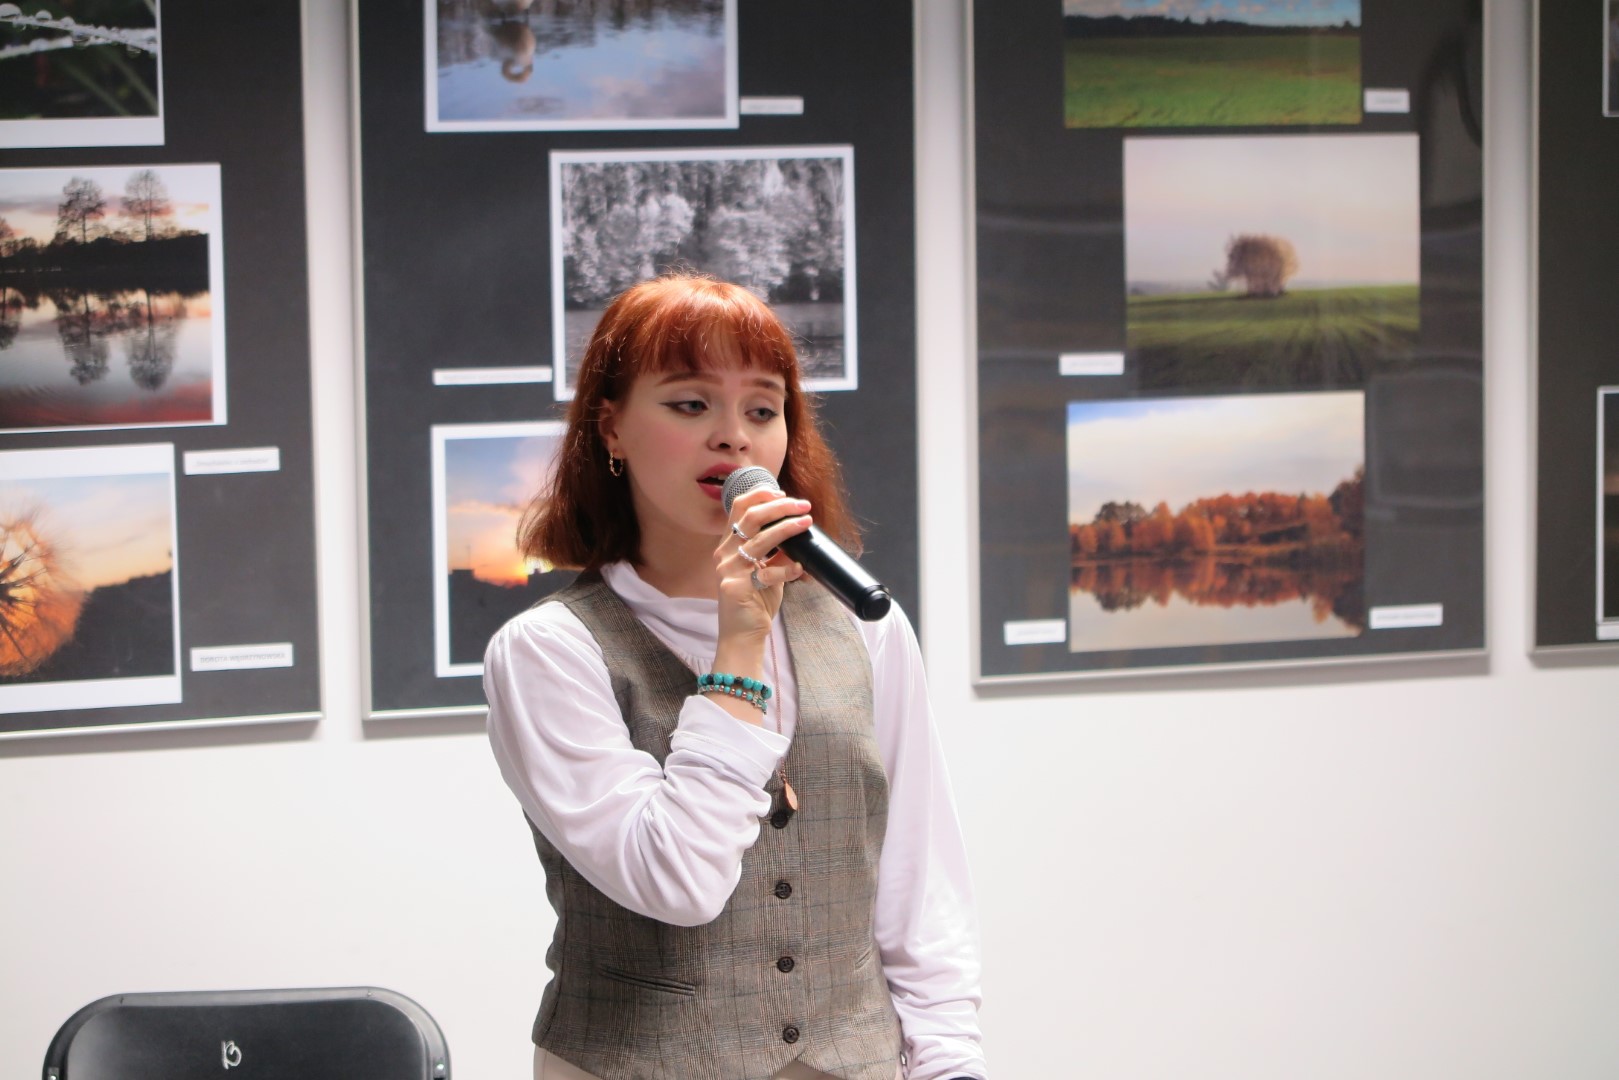 wokalistka  zapewniająca oprawę muzyczną na tle ściany z wystawa fotografii 